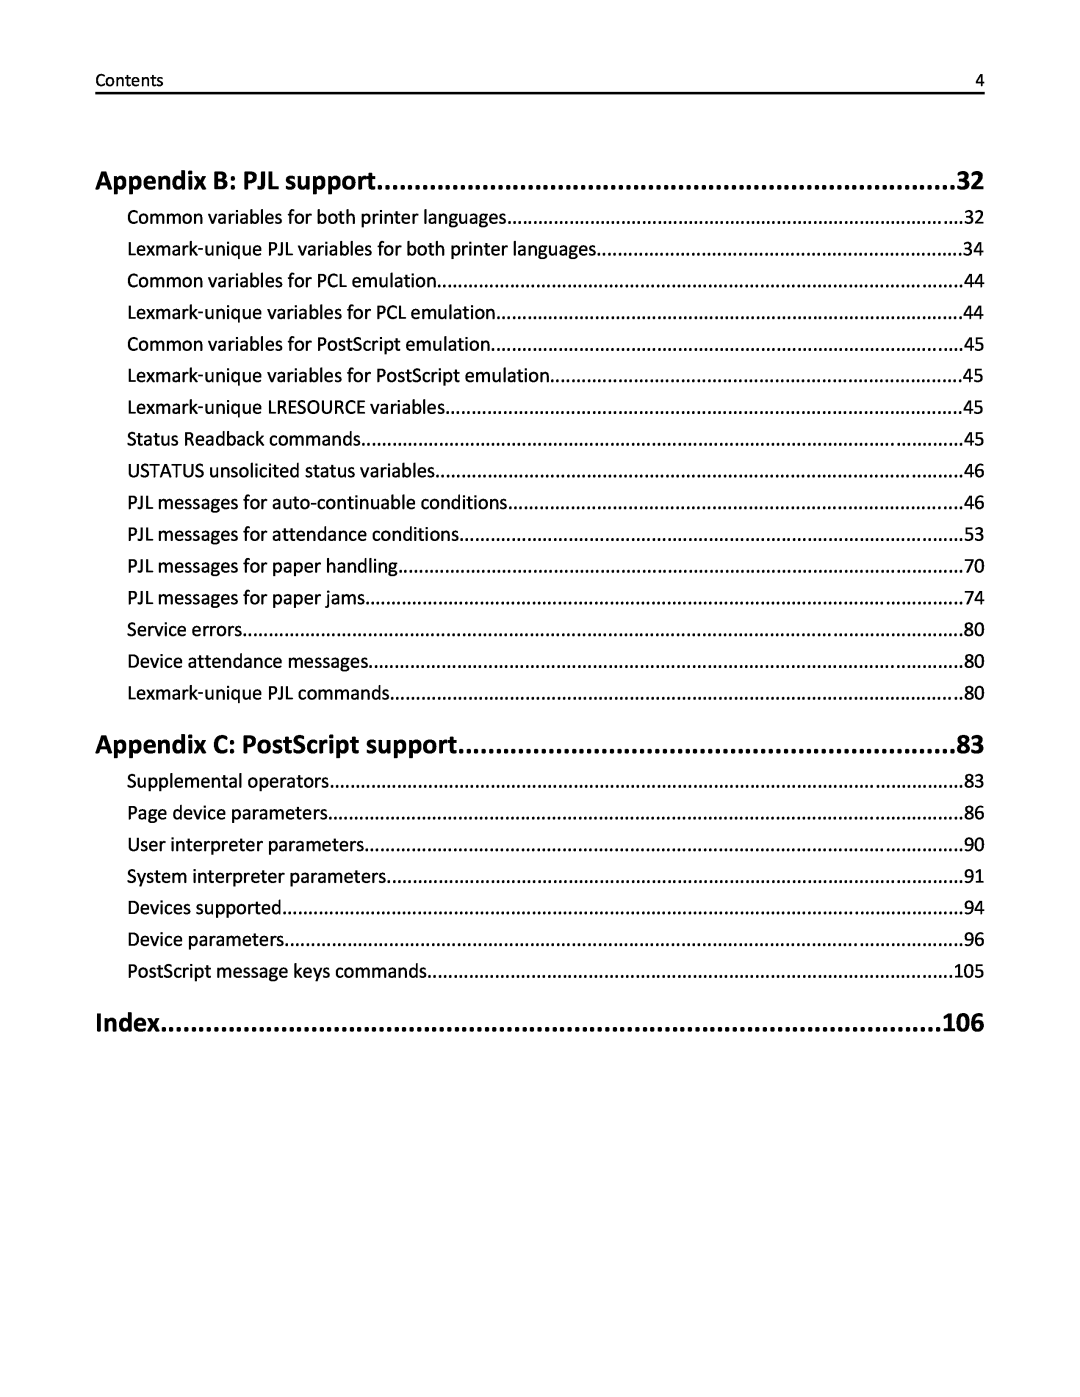 Lexmark 746n, 748dte, 748de, 746de, 746dn, 746dtn, 748e manual Appendix B: PJL support, Appendix C: PostScript support, Index 